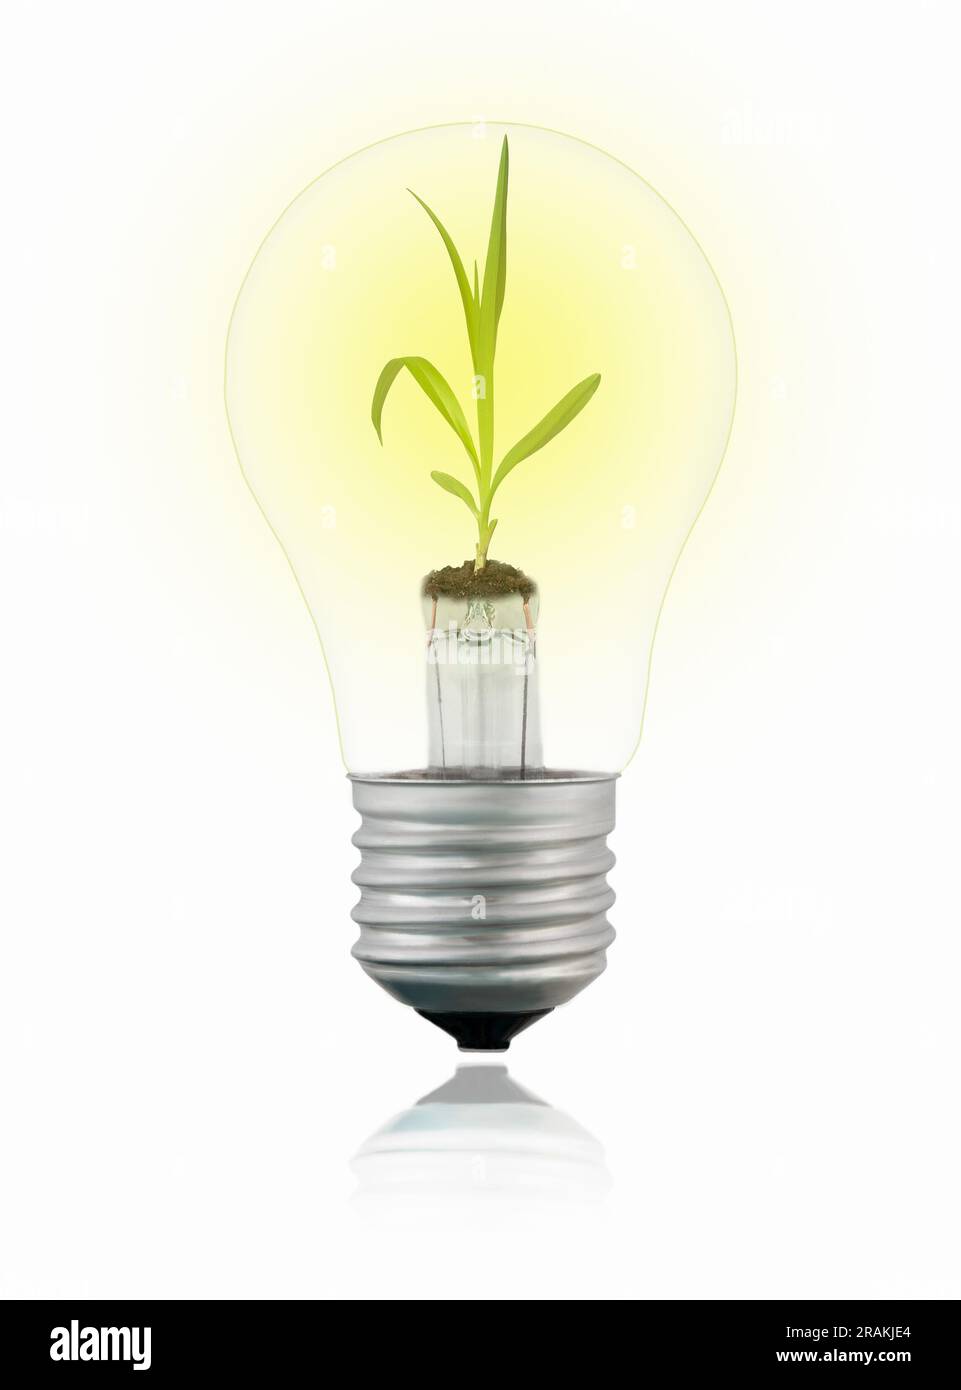 Lichtdurchlässige, isolierte Wolfram-Glühlampe mit Sprout innen auf weißem Hintergrund mit Reflexion. Konzept der grünen Energie. Stockfoto